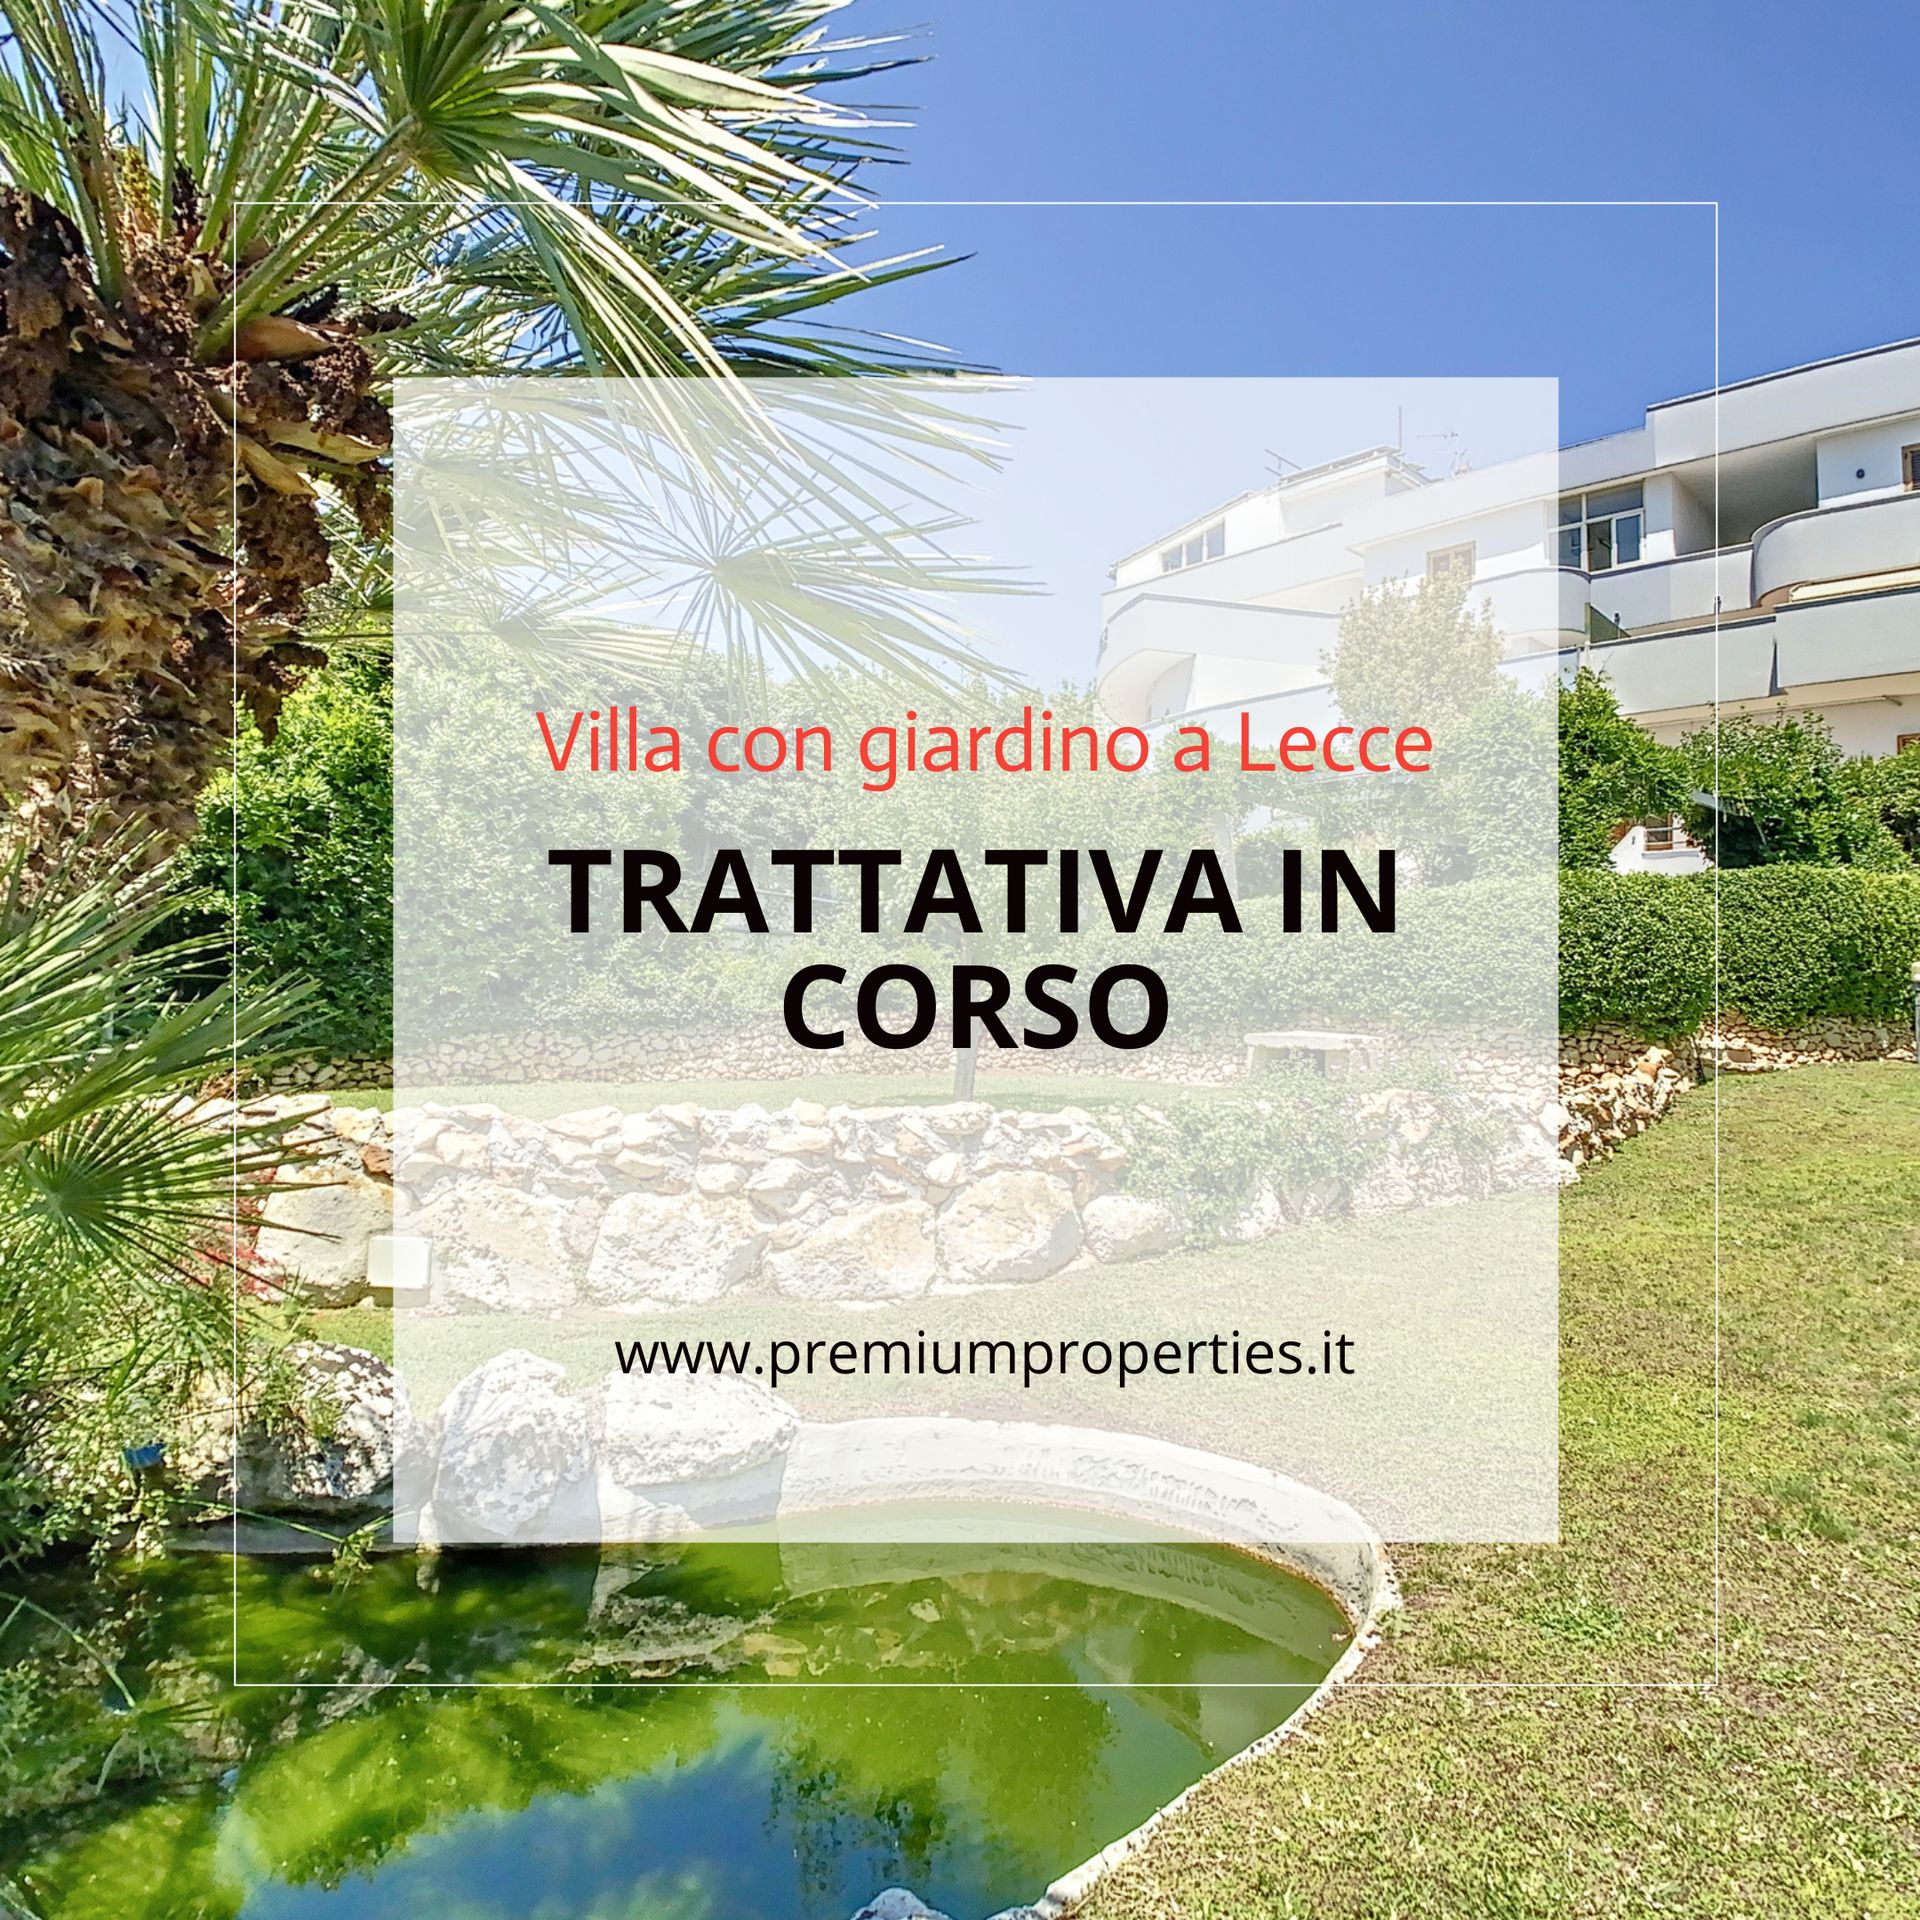 Villa Lusso Lecce: Vendita in Puglia | luxforsale.it